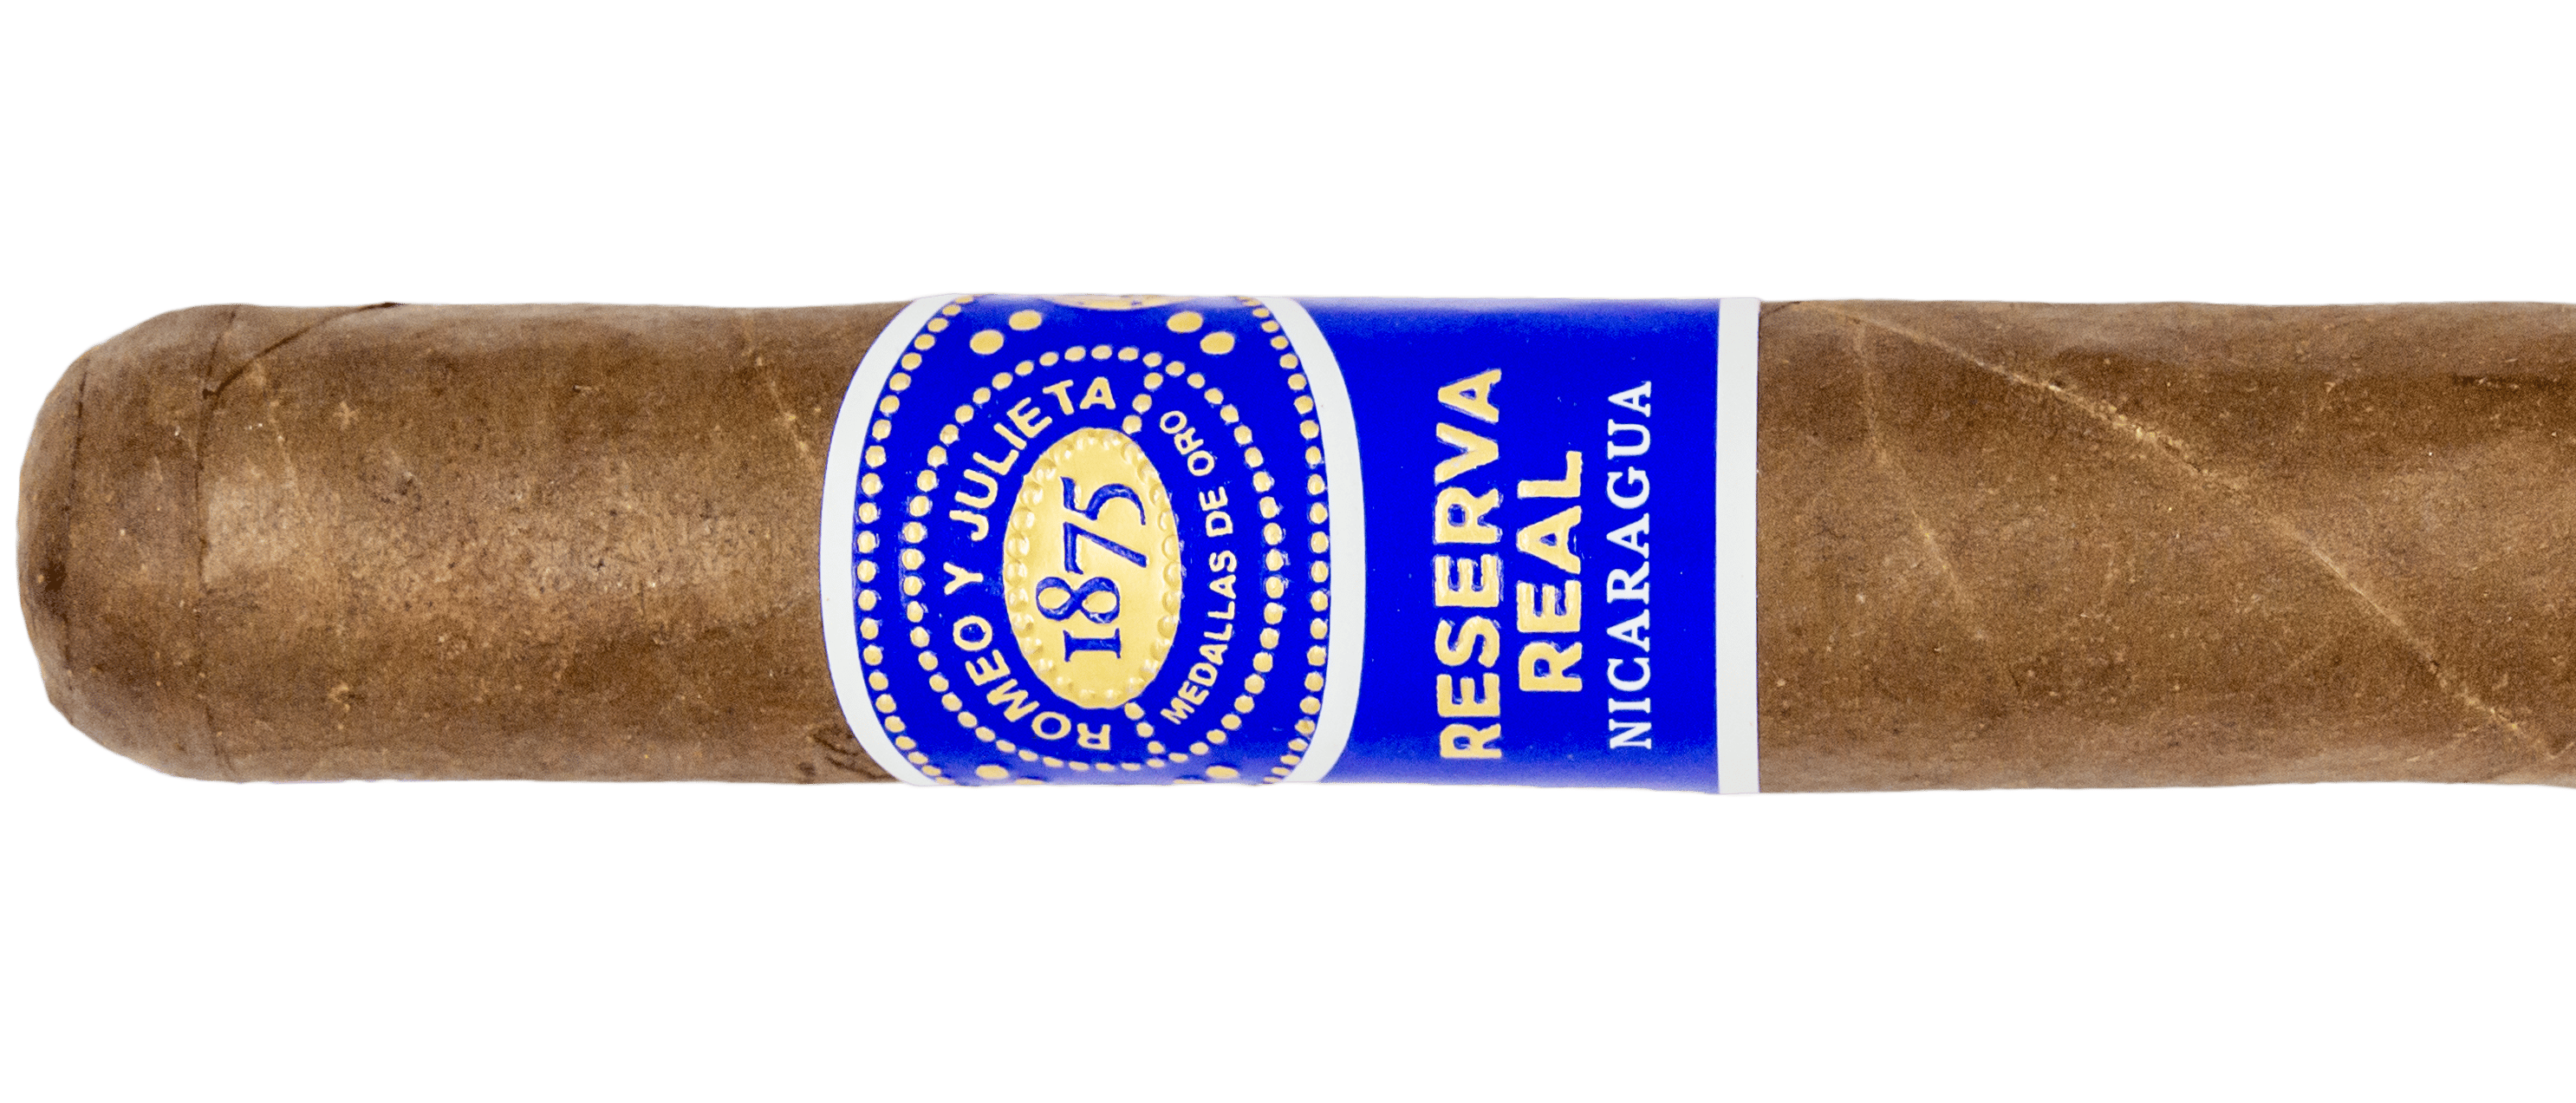 Romeo y Julieta Reserva Real Nicaragua Toro - Blind Cigar Review